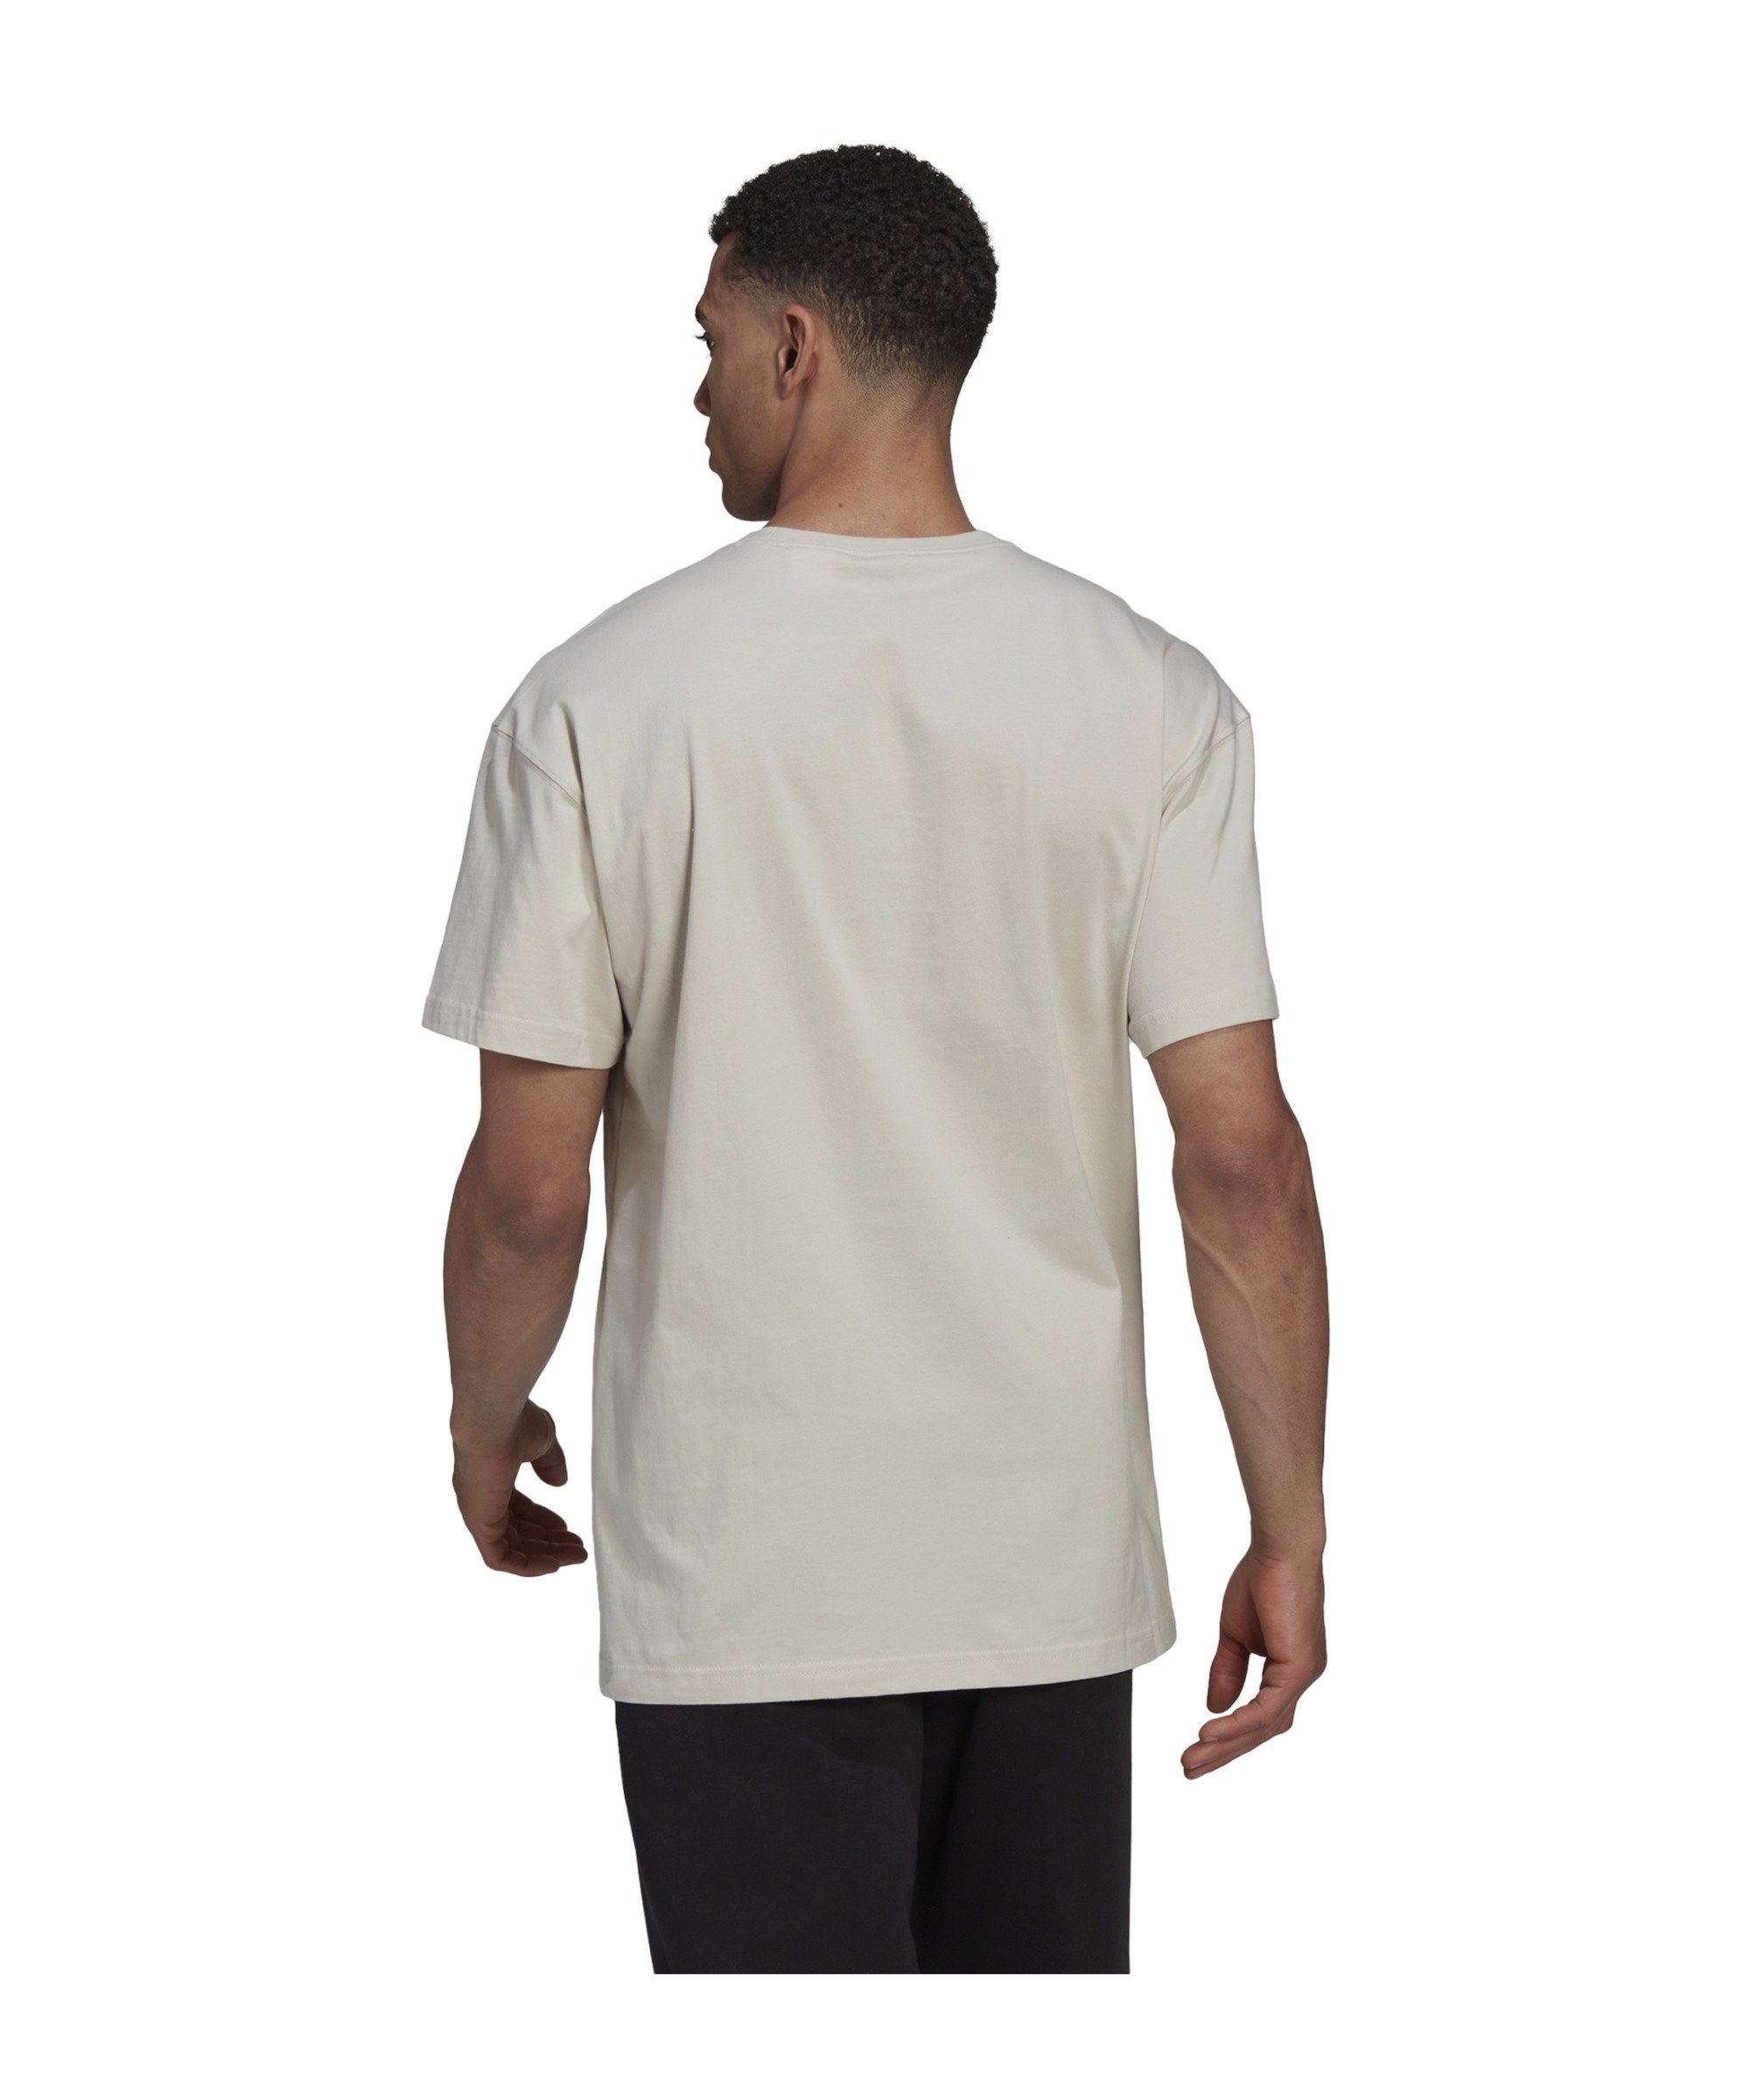 adidas default FV T-Shirt grau T-Shirt Performance